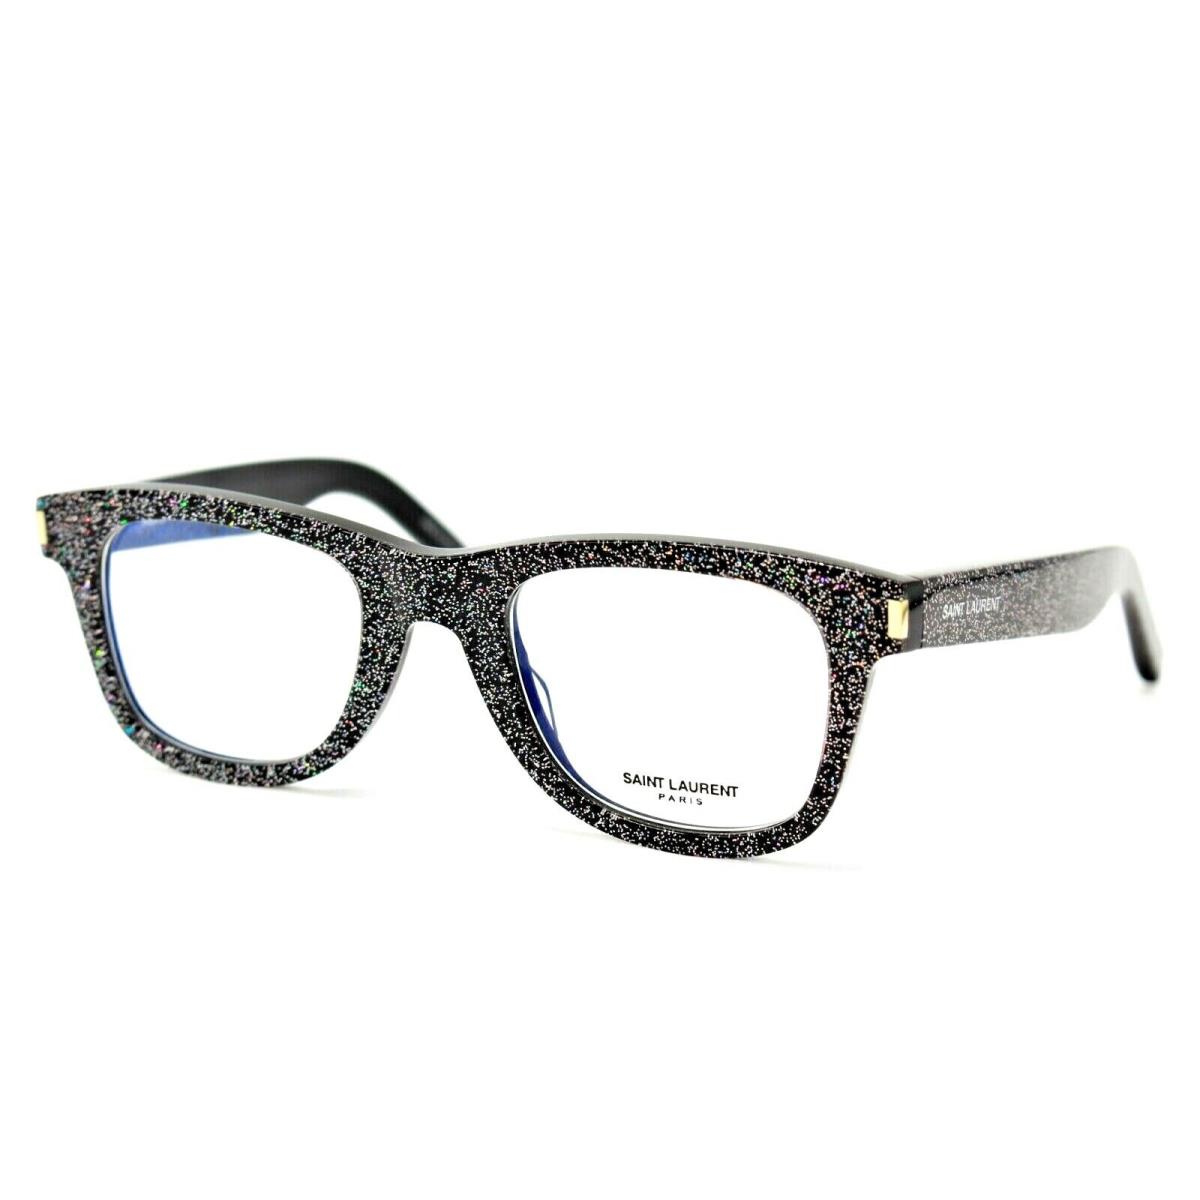 Saint Laurent SL50 012 Sparks Black Eyeglasses Frame 48-22